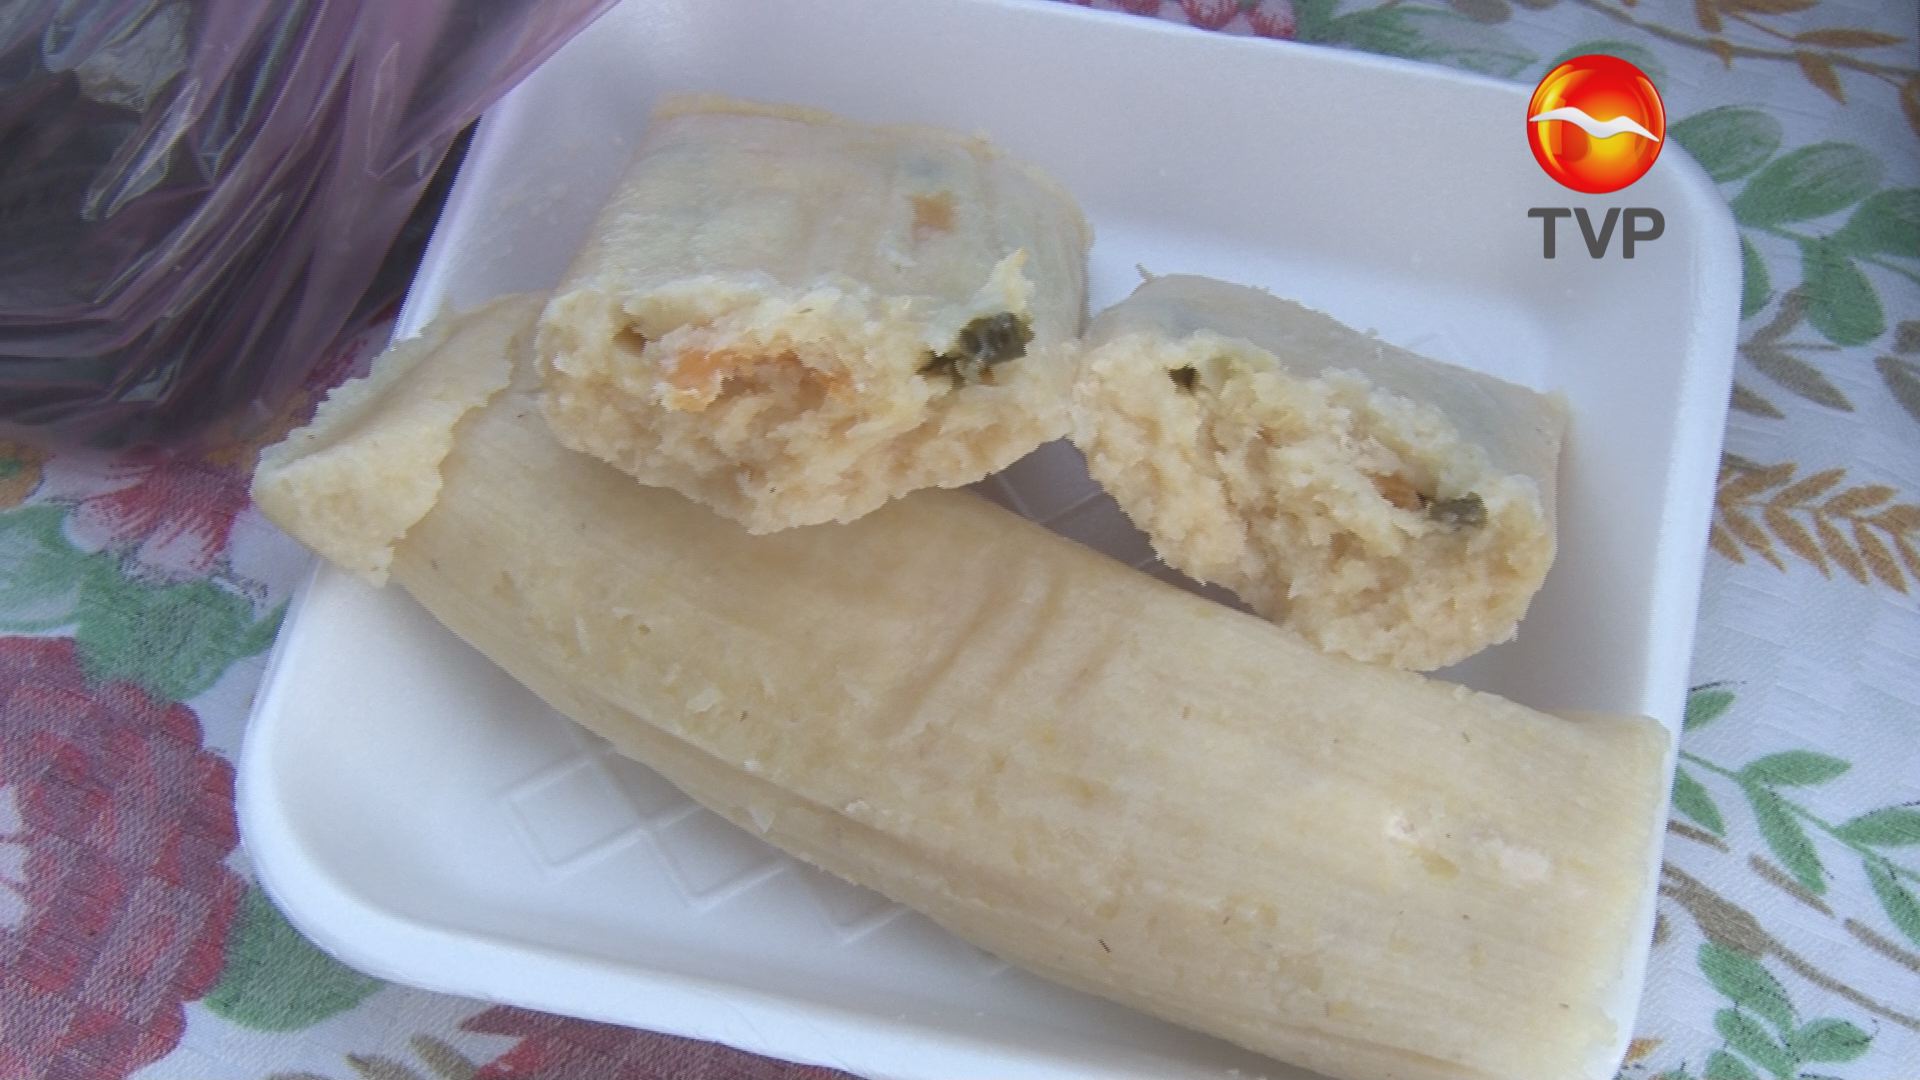 Ricos tamales de puerco, elote, picadillo, queso crema y rajas | Sinaloa |  Noticias | TVP 